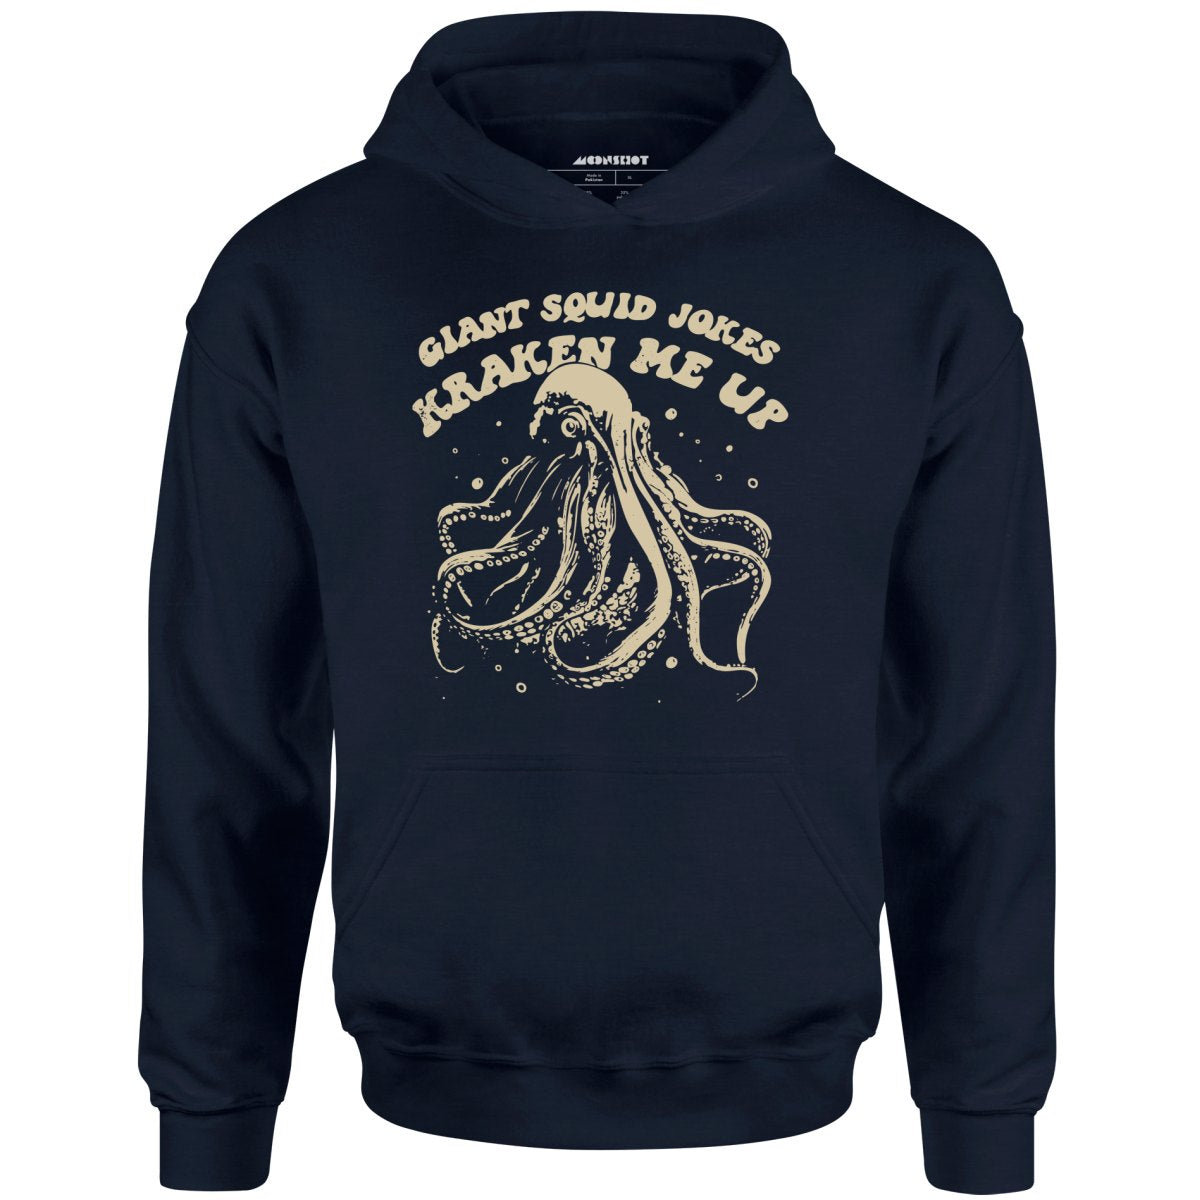 Giant Squid Jokes Kraken Me Up - Unisex Hoodie